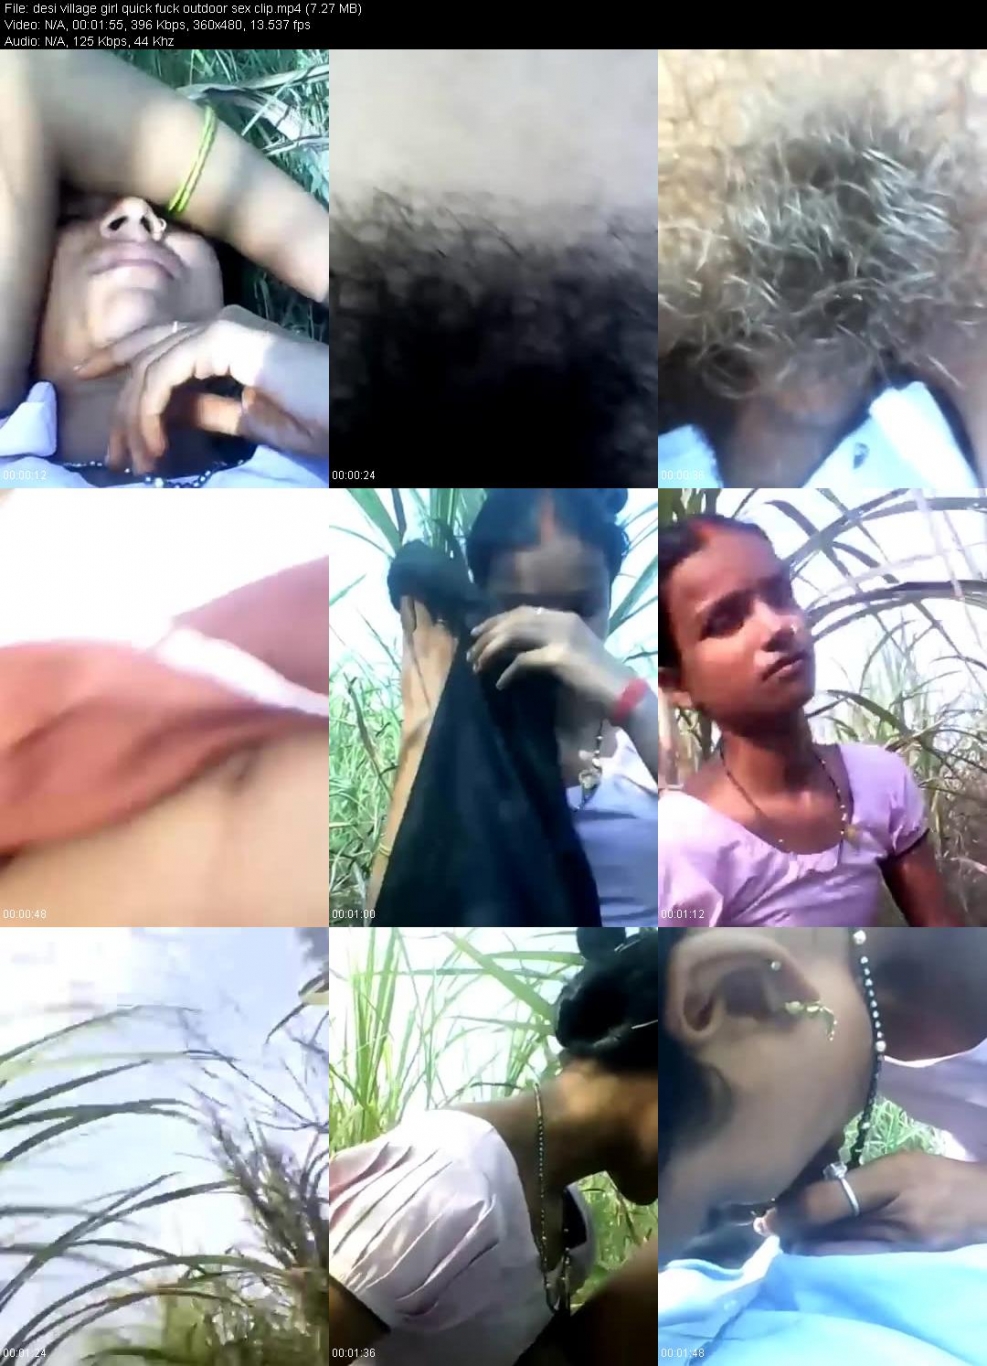 Indian village girl outdoor gangbang porn